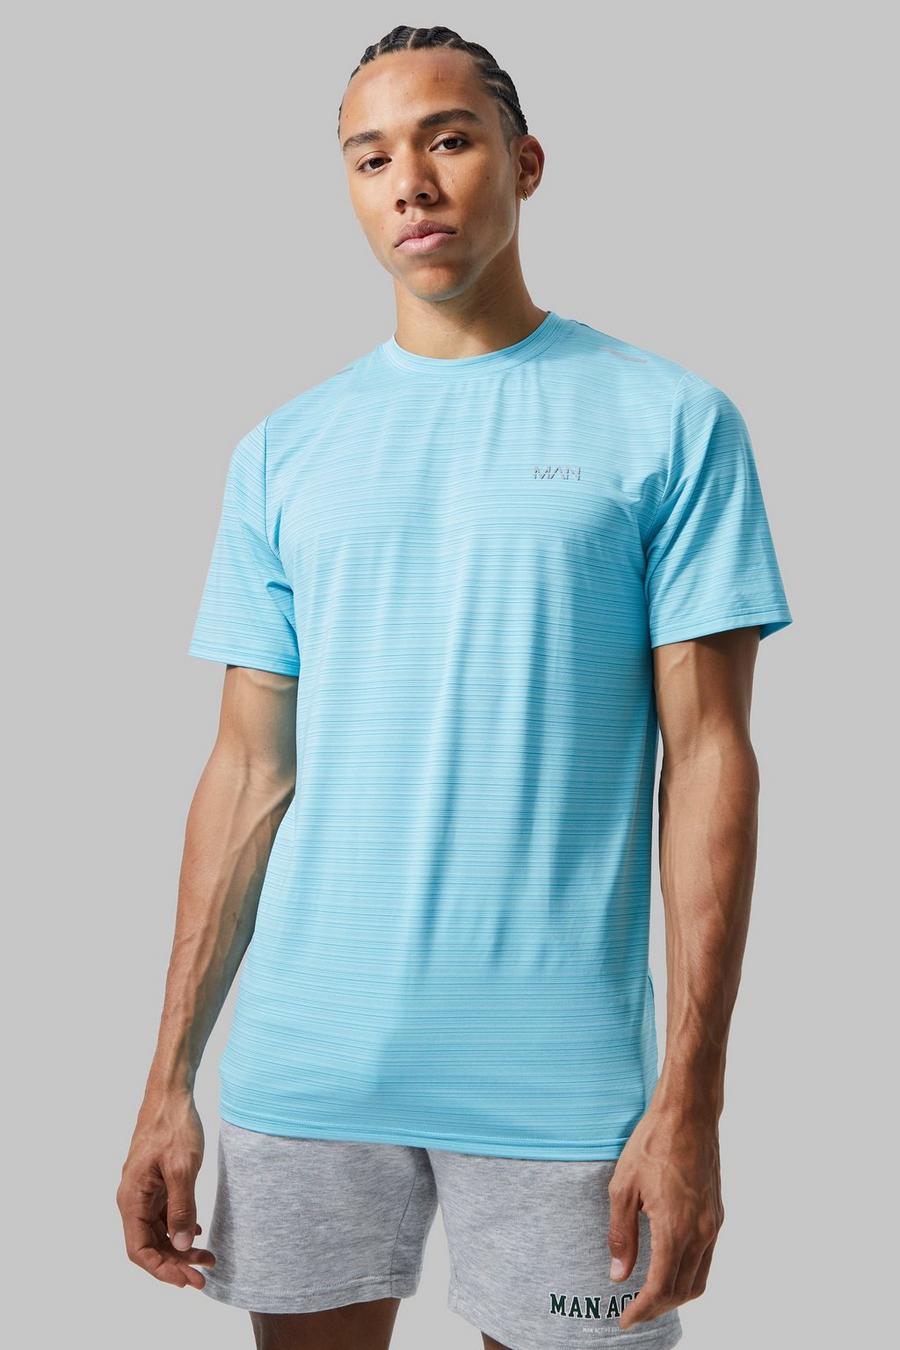 Tall Man Active Lightweight Performance T-Shirt, Light blue